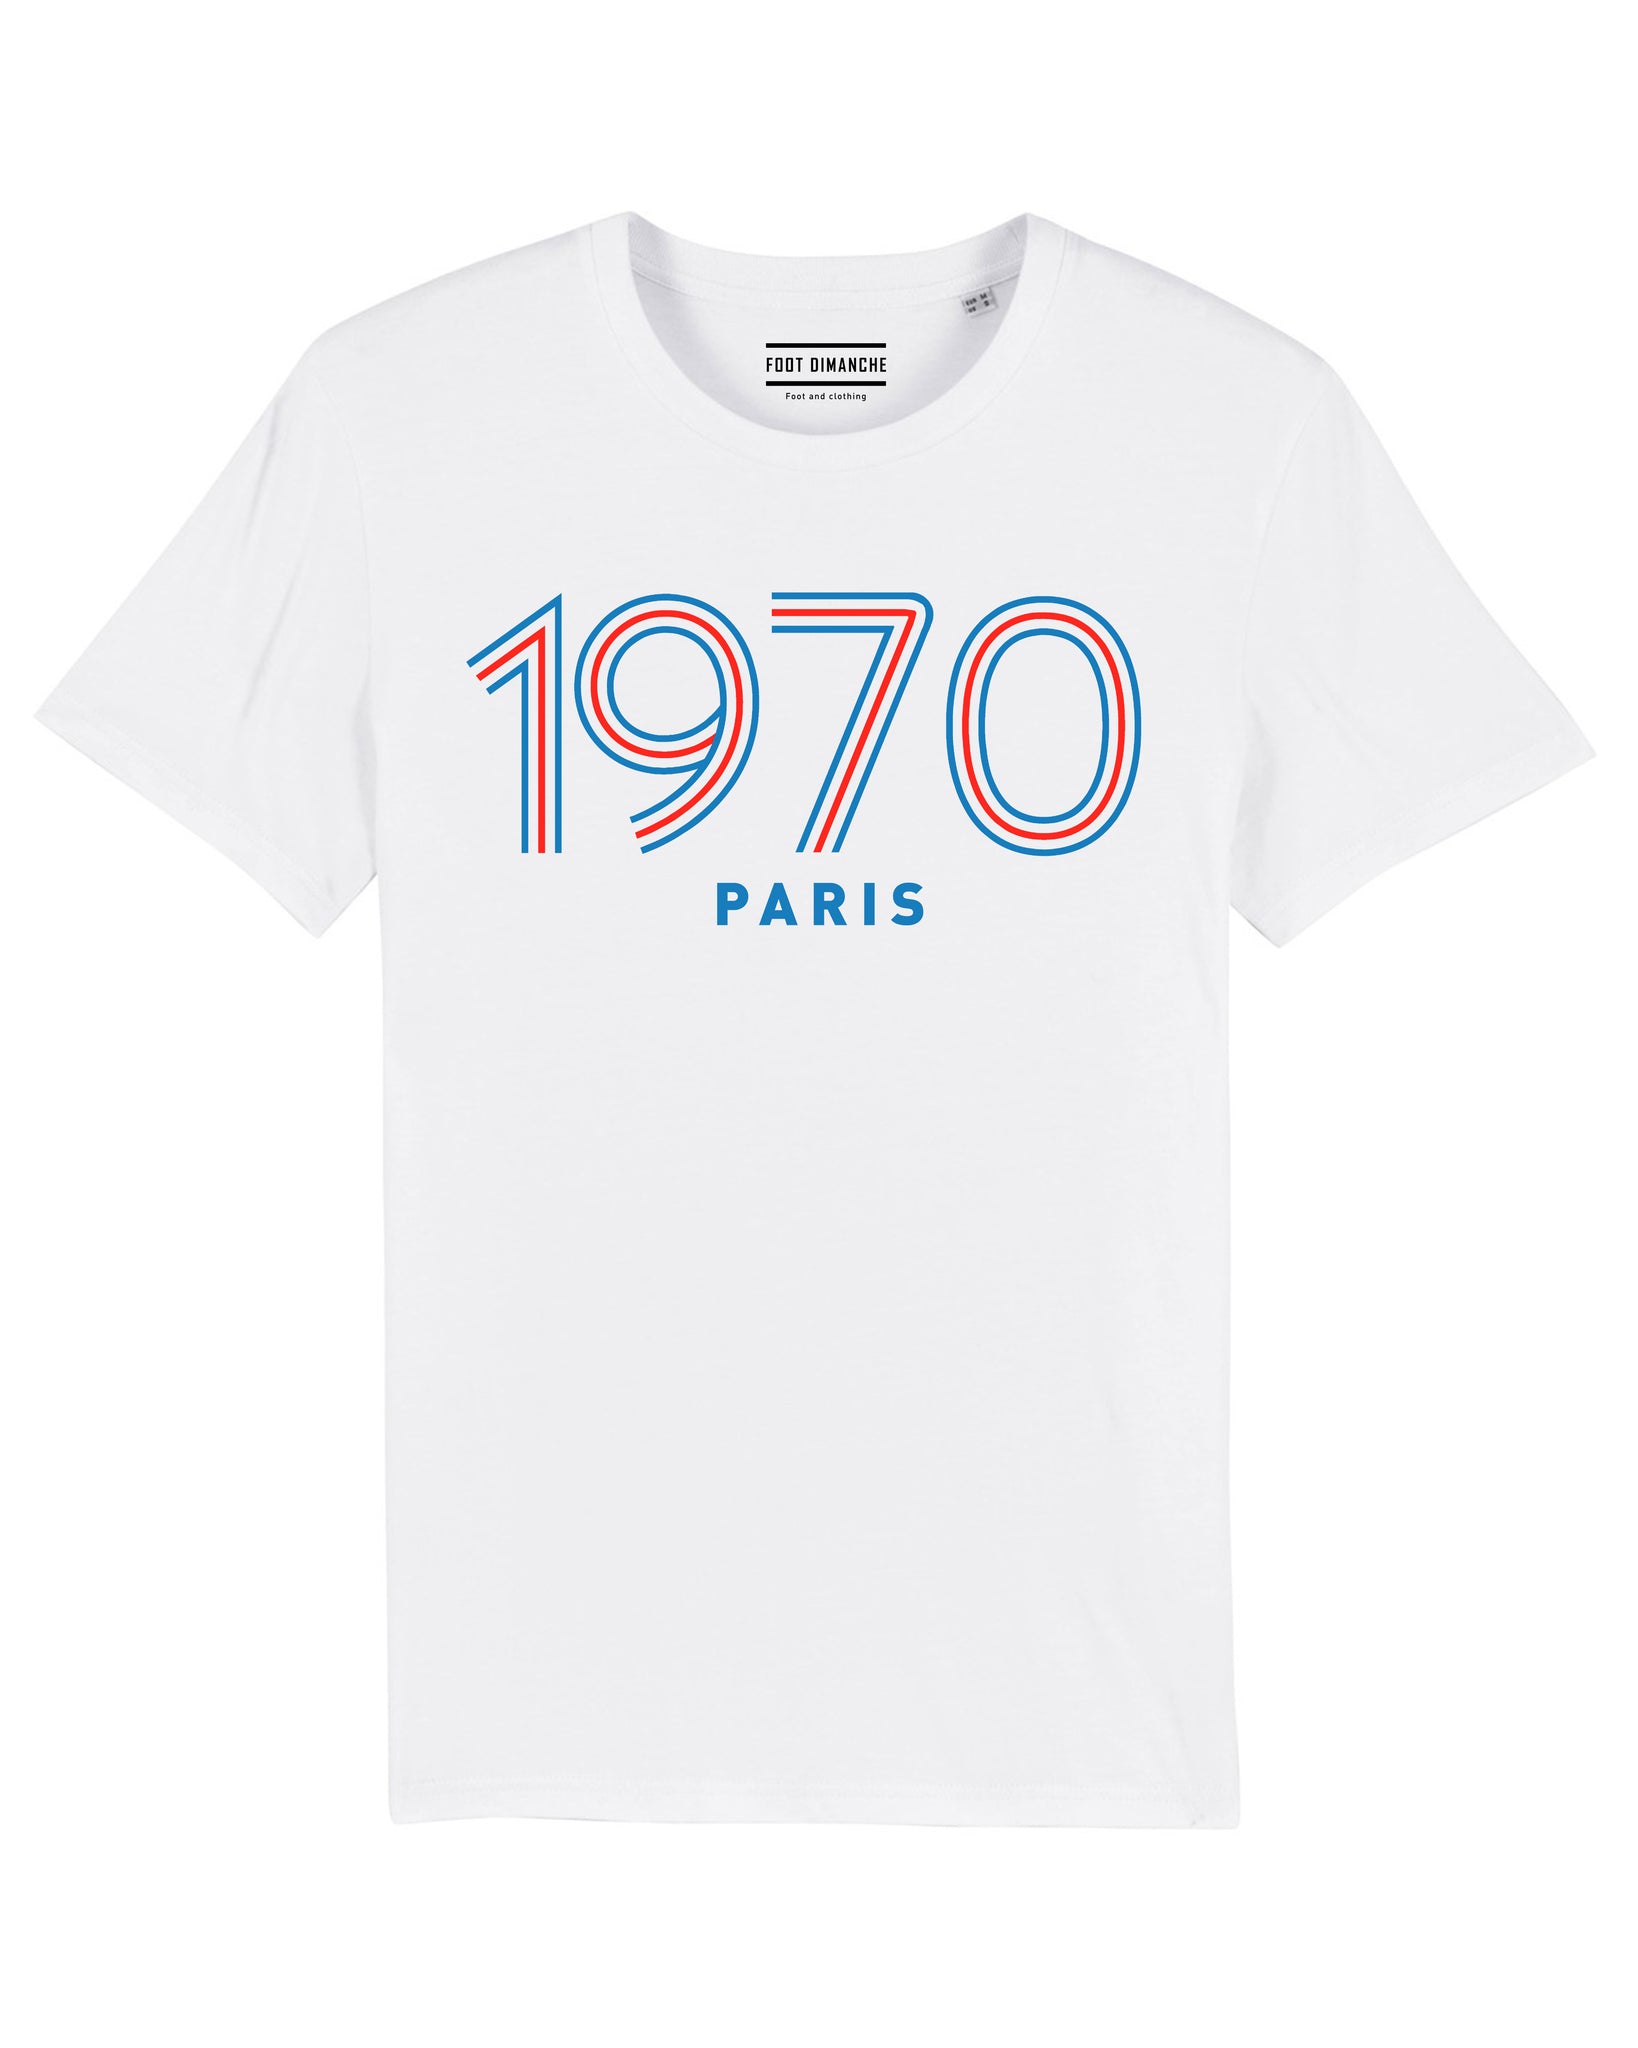 Tee Shirt Paris 1970